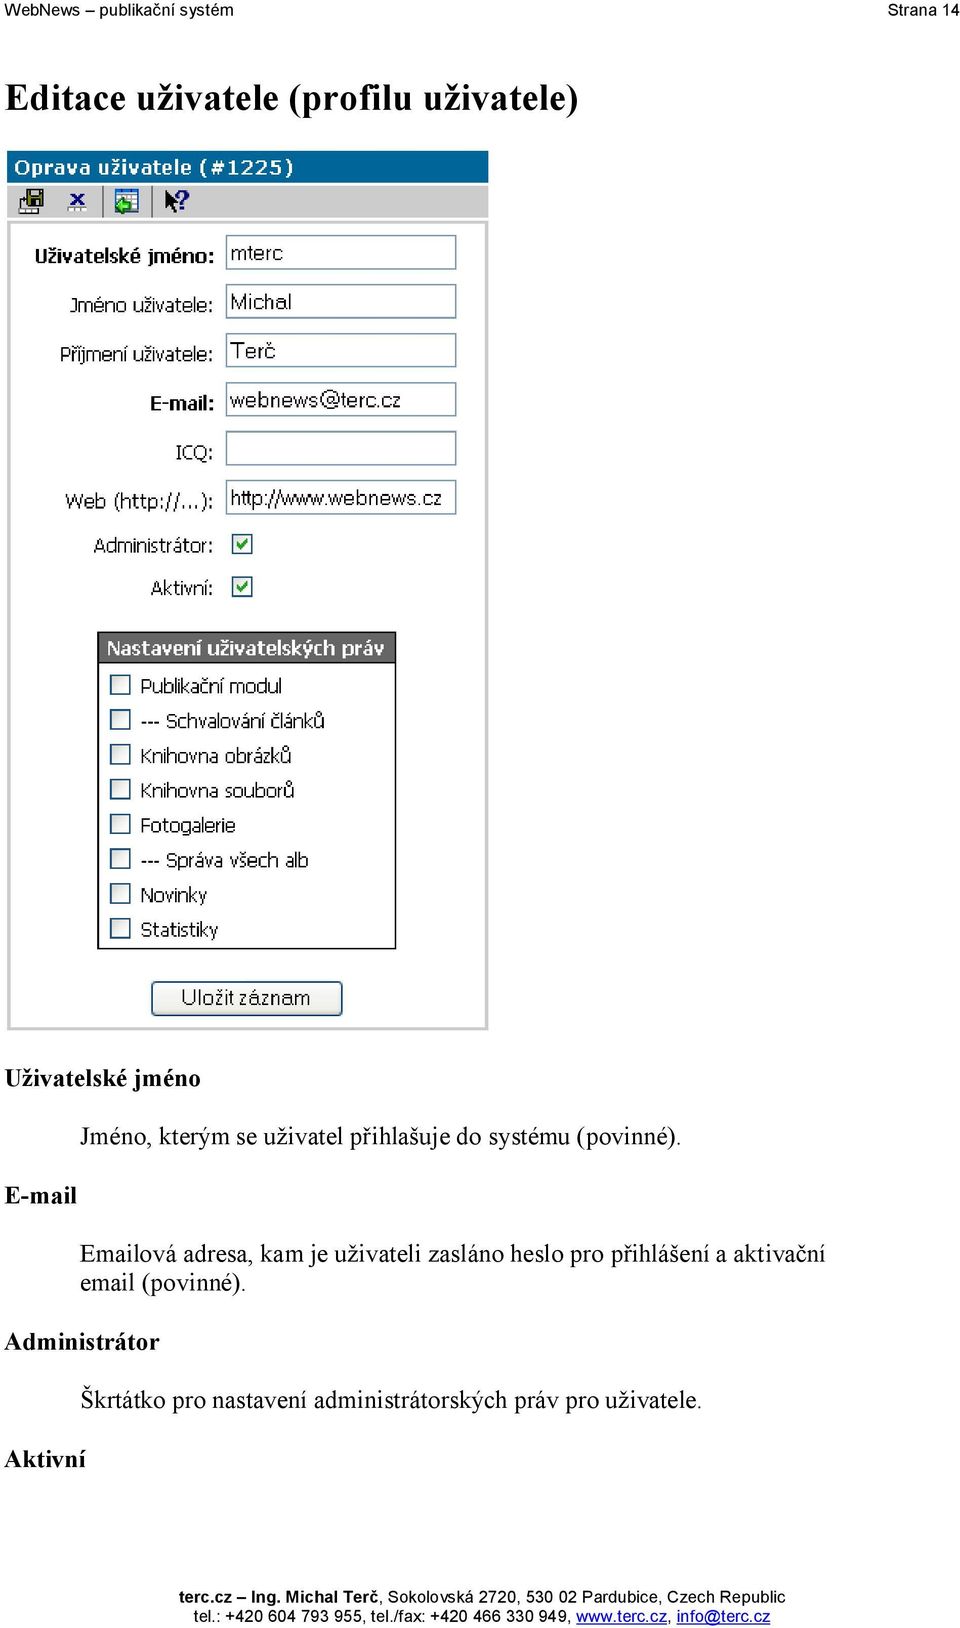 Emailová adresa, kam je uživateli zasláno heslo pro přihlášení a aktivační email